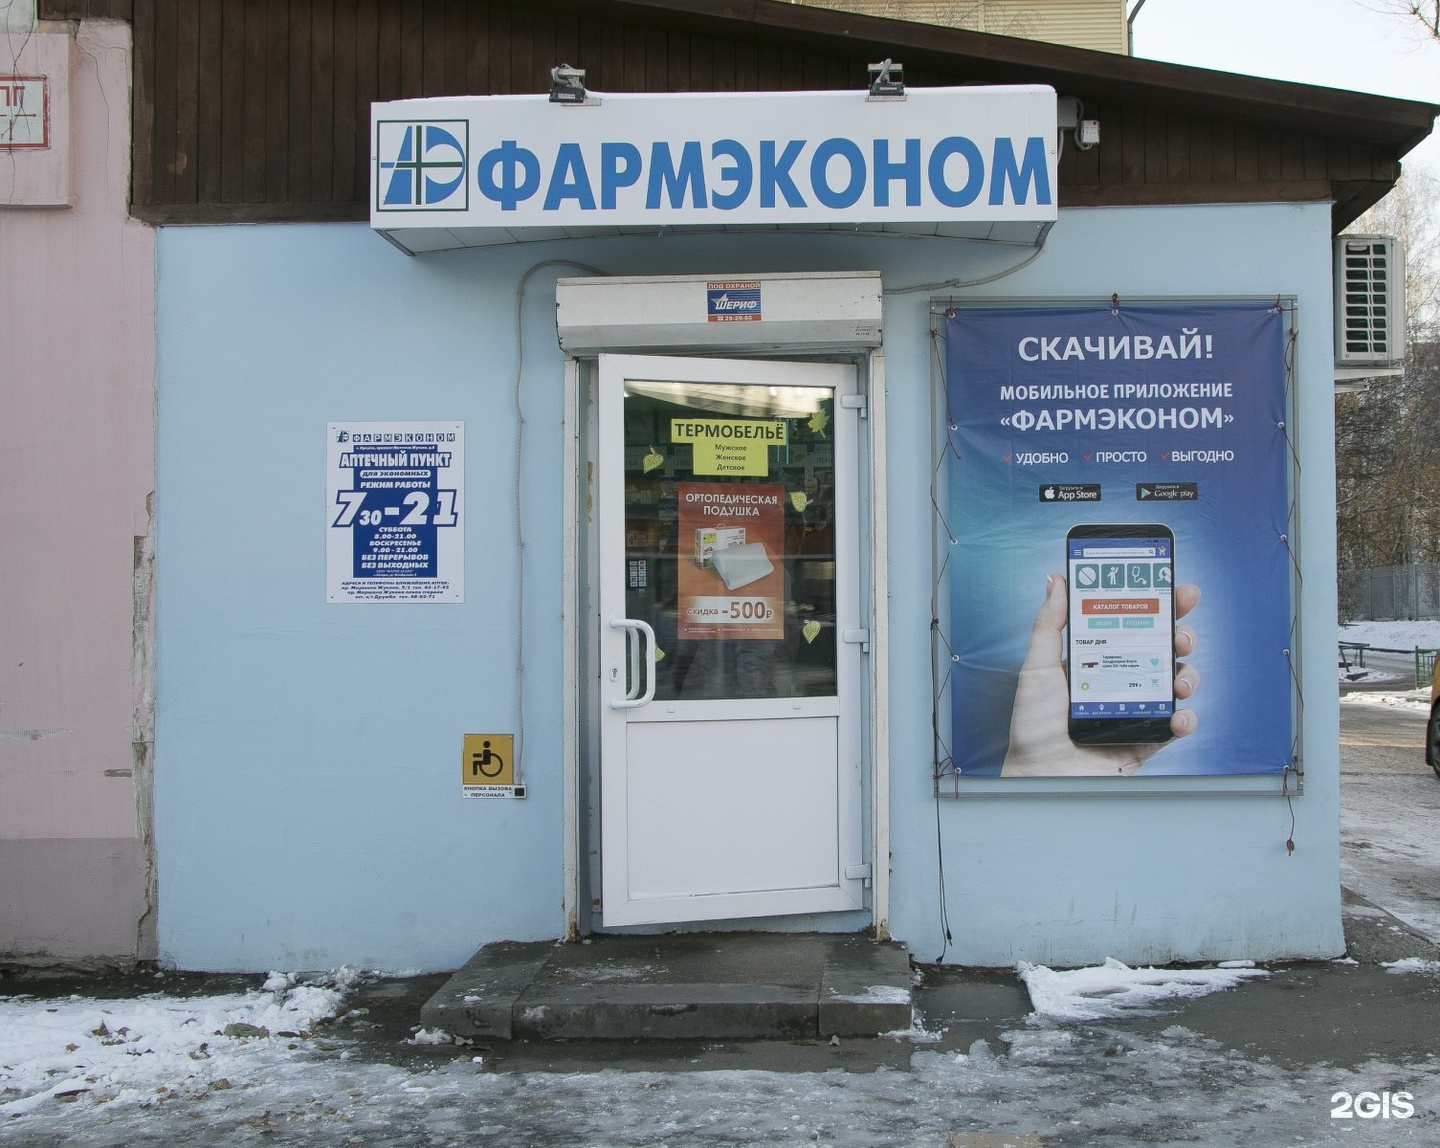 Фармэконом иркутск телефон